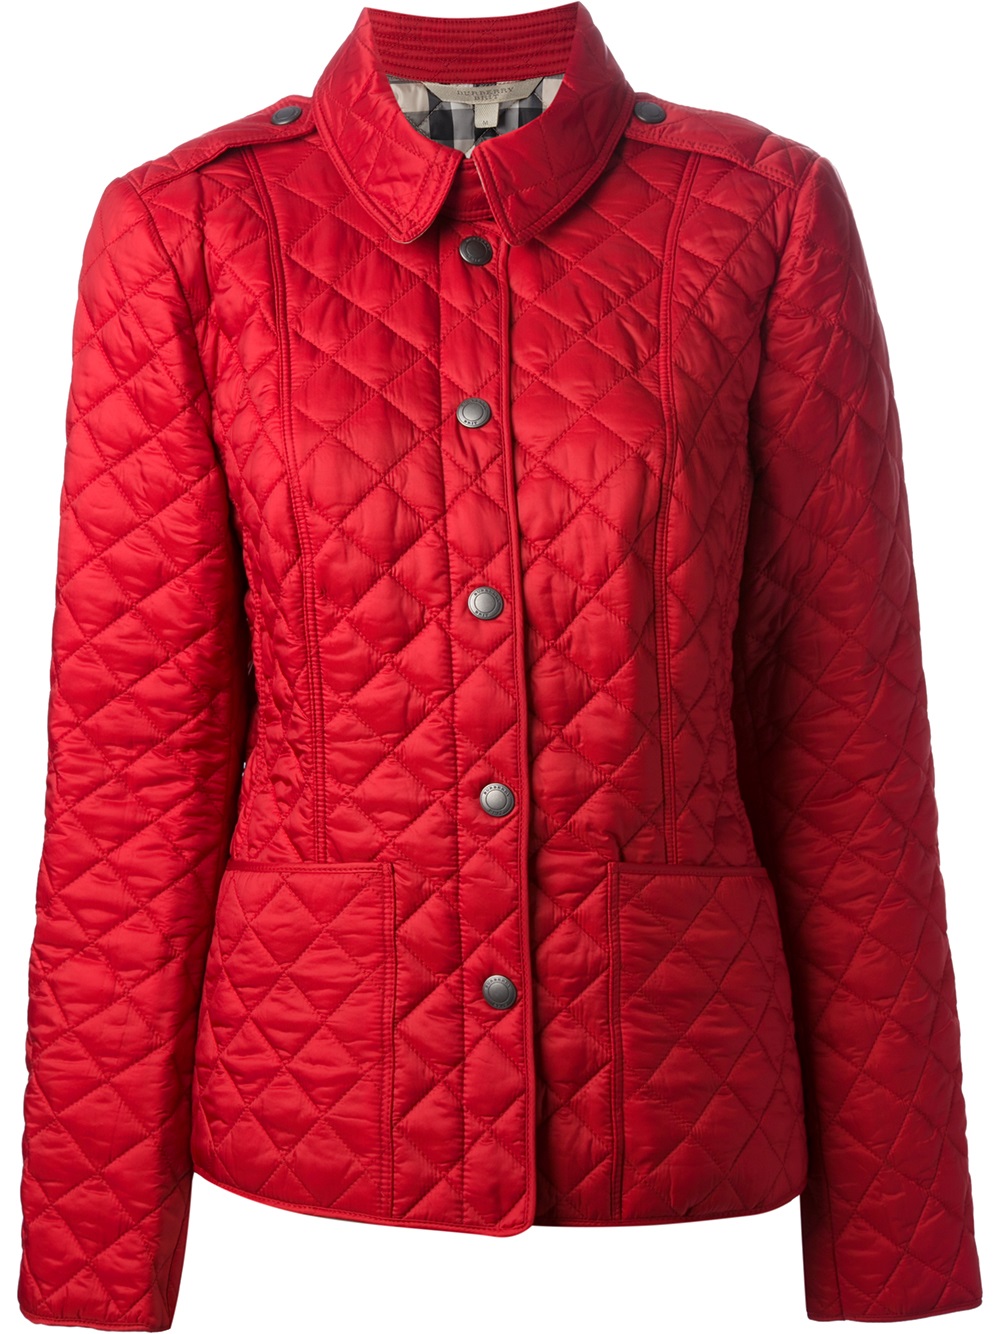 Total 34+ imagen red burberry jacket